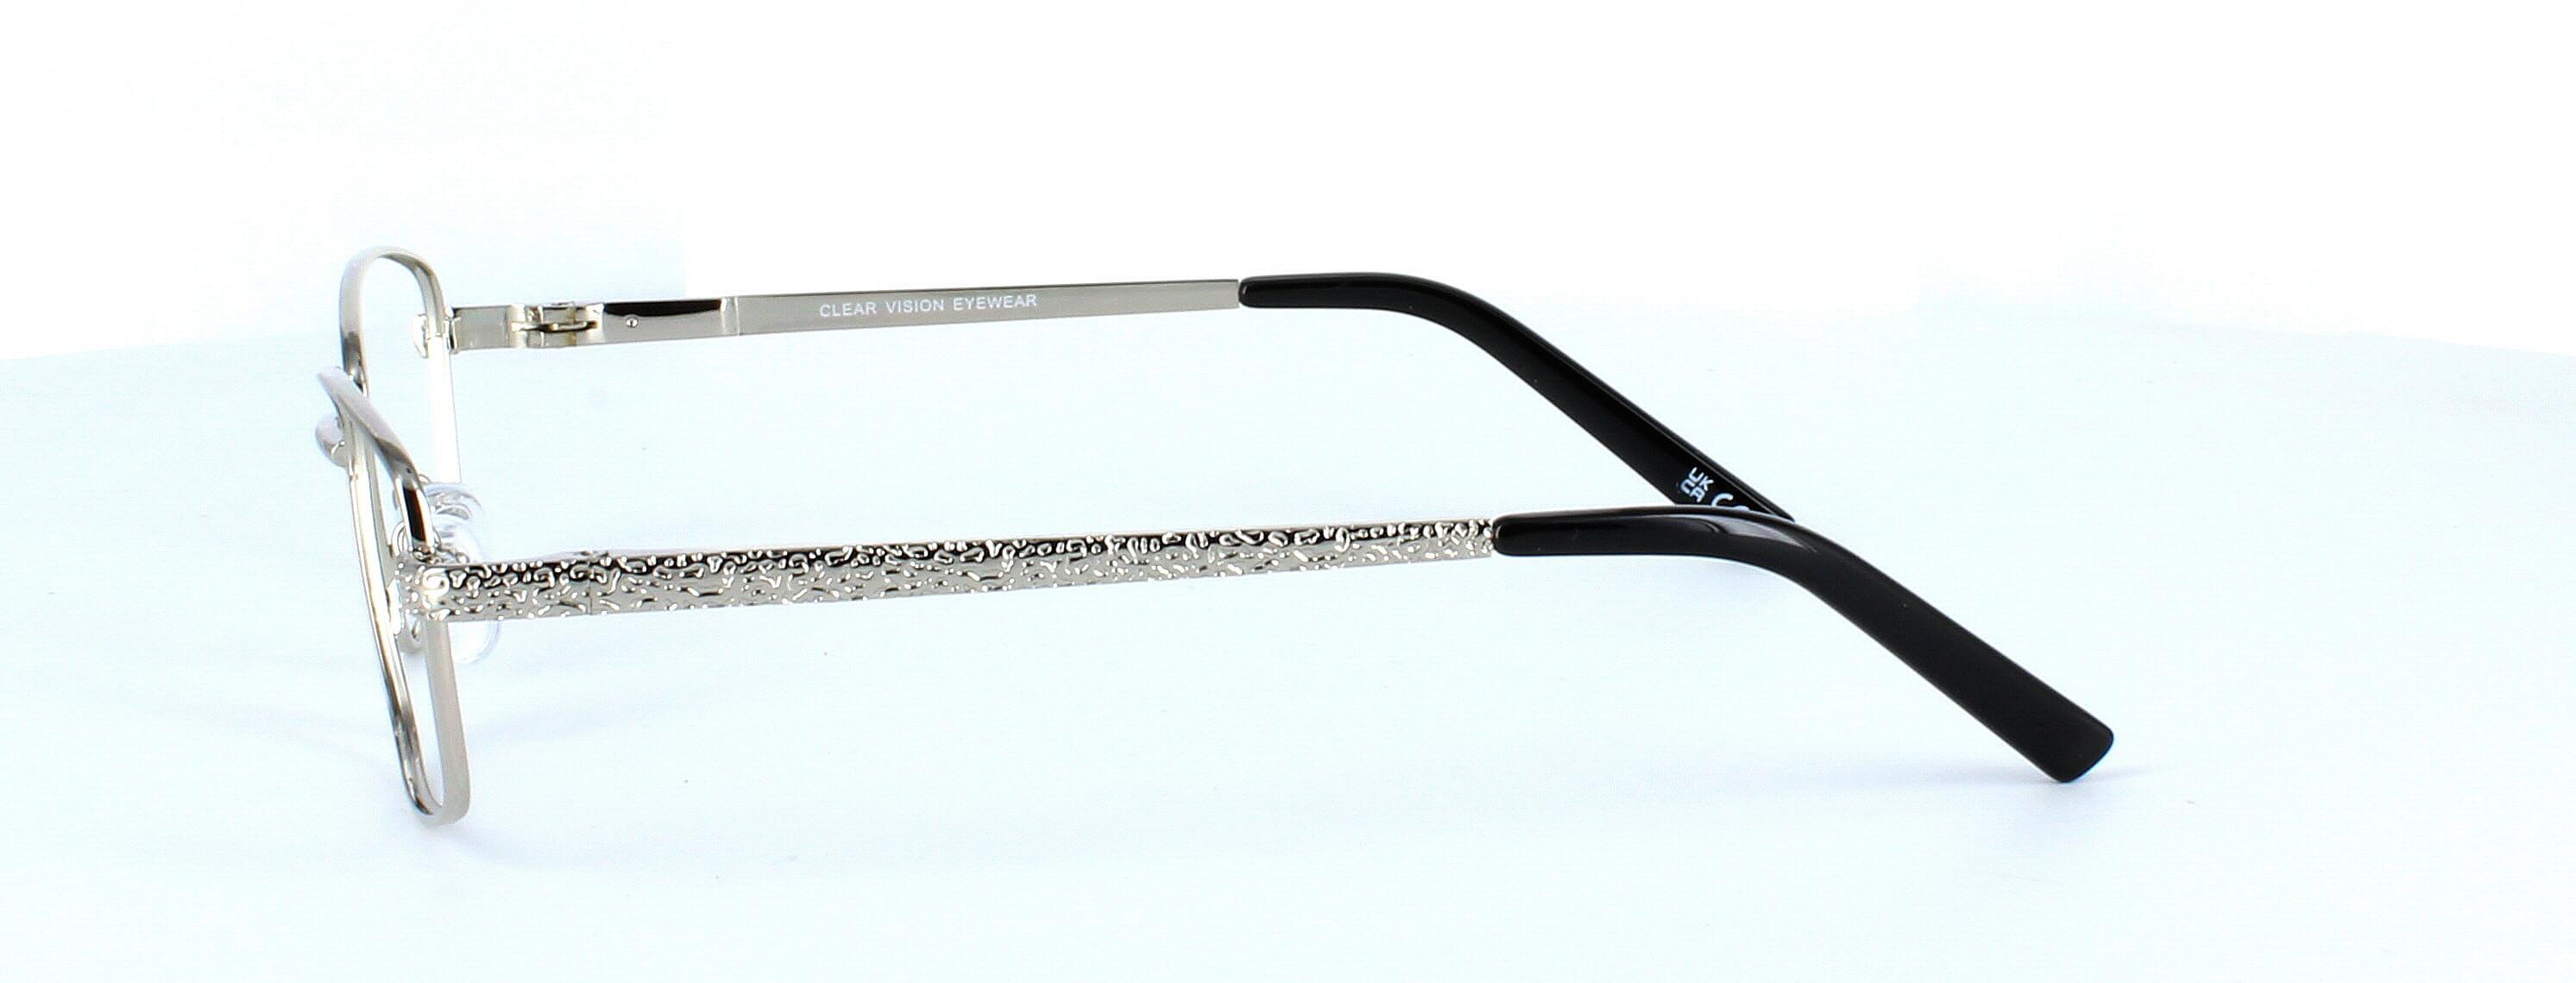 Sophia - Ladies silver metal glasses frame - image view 2